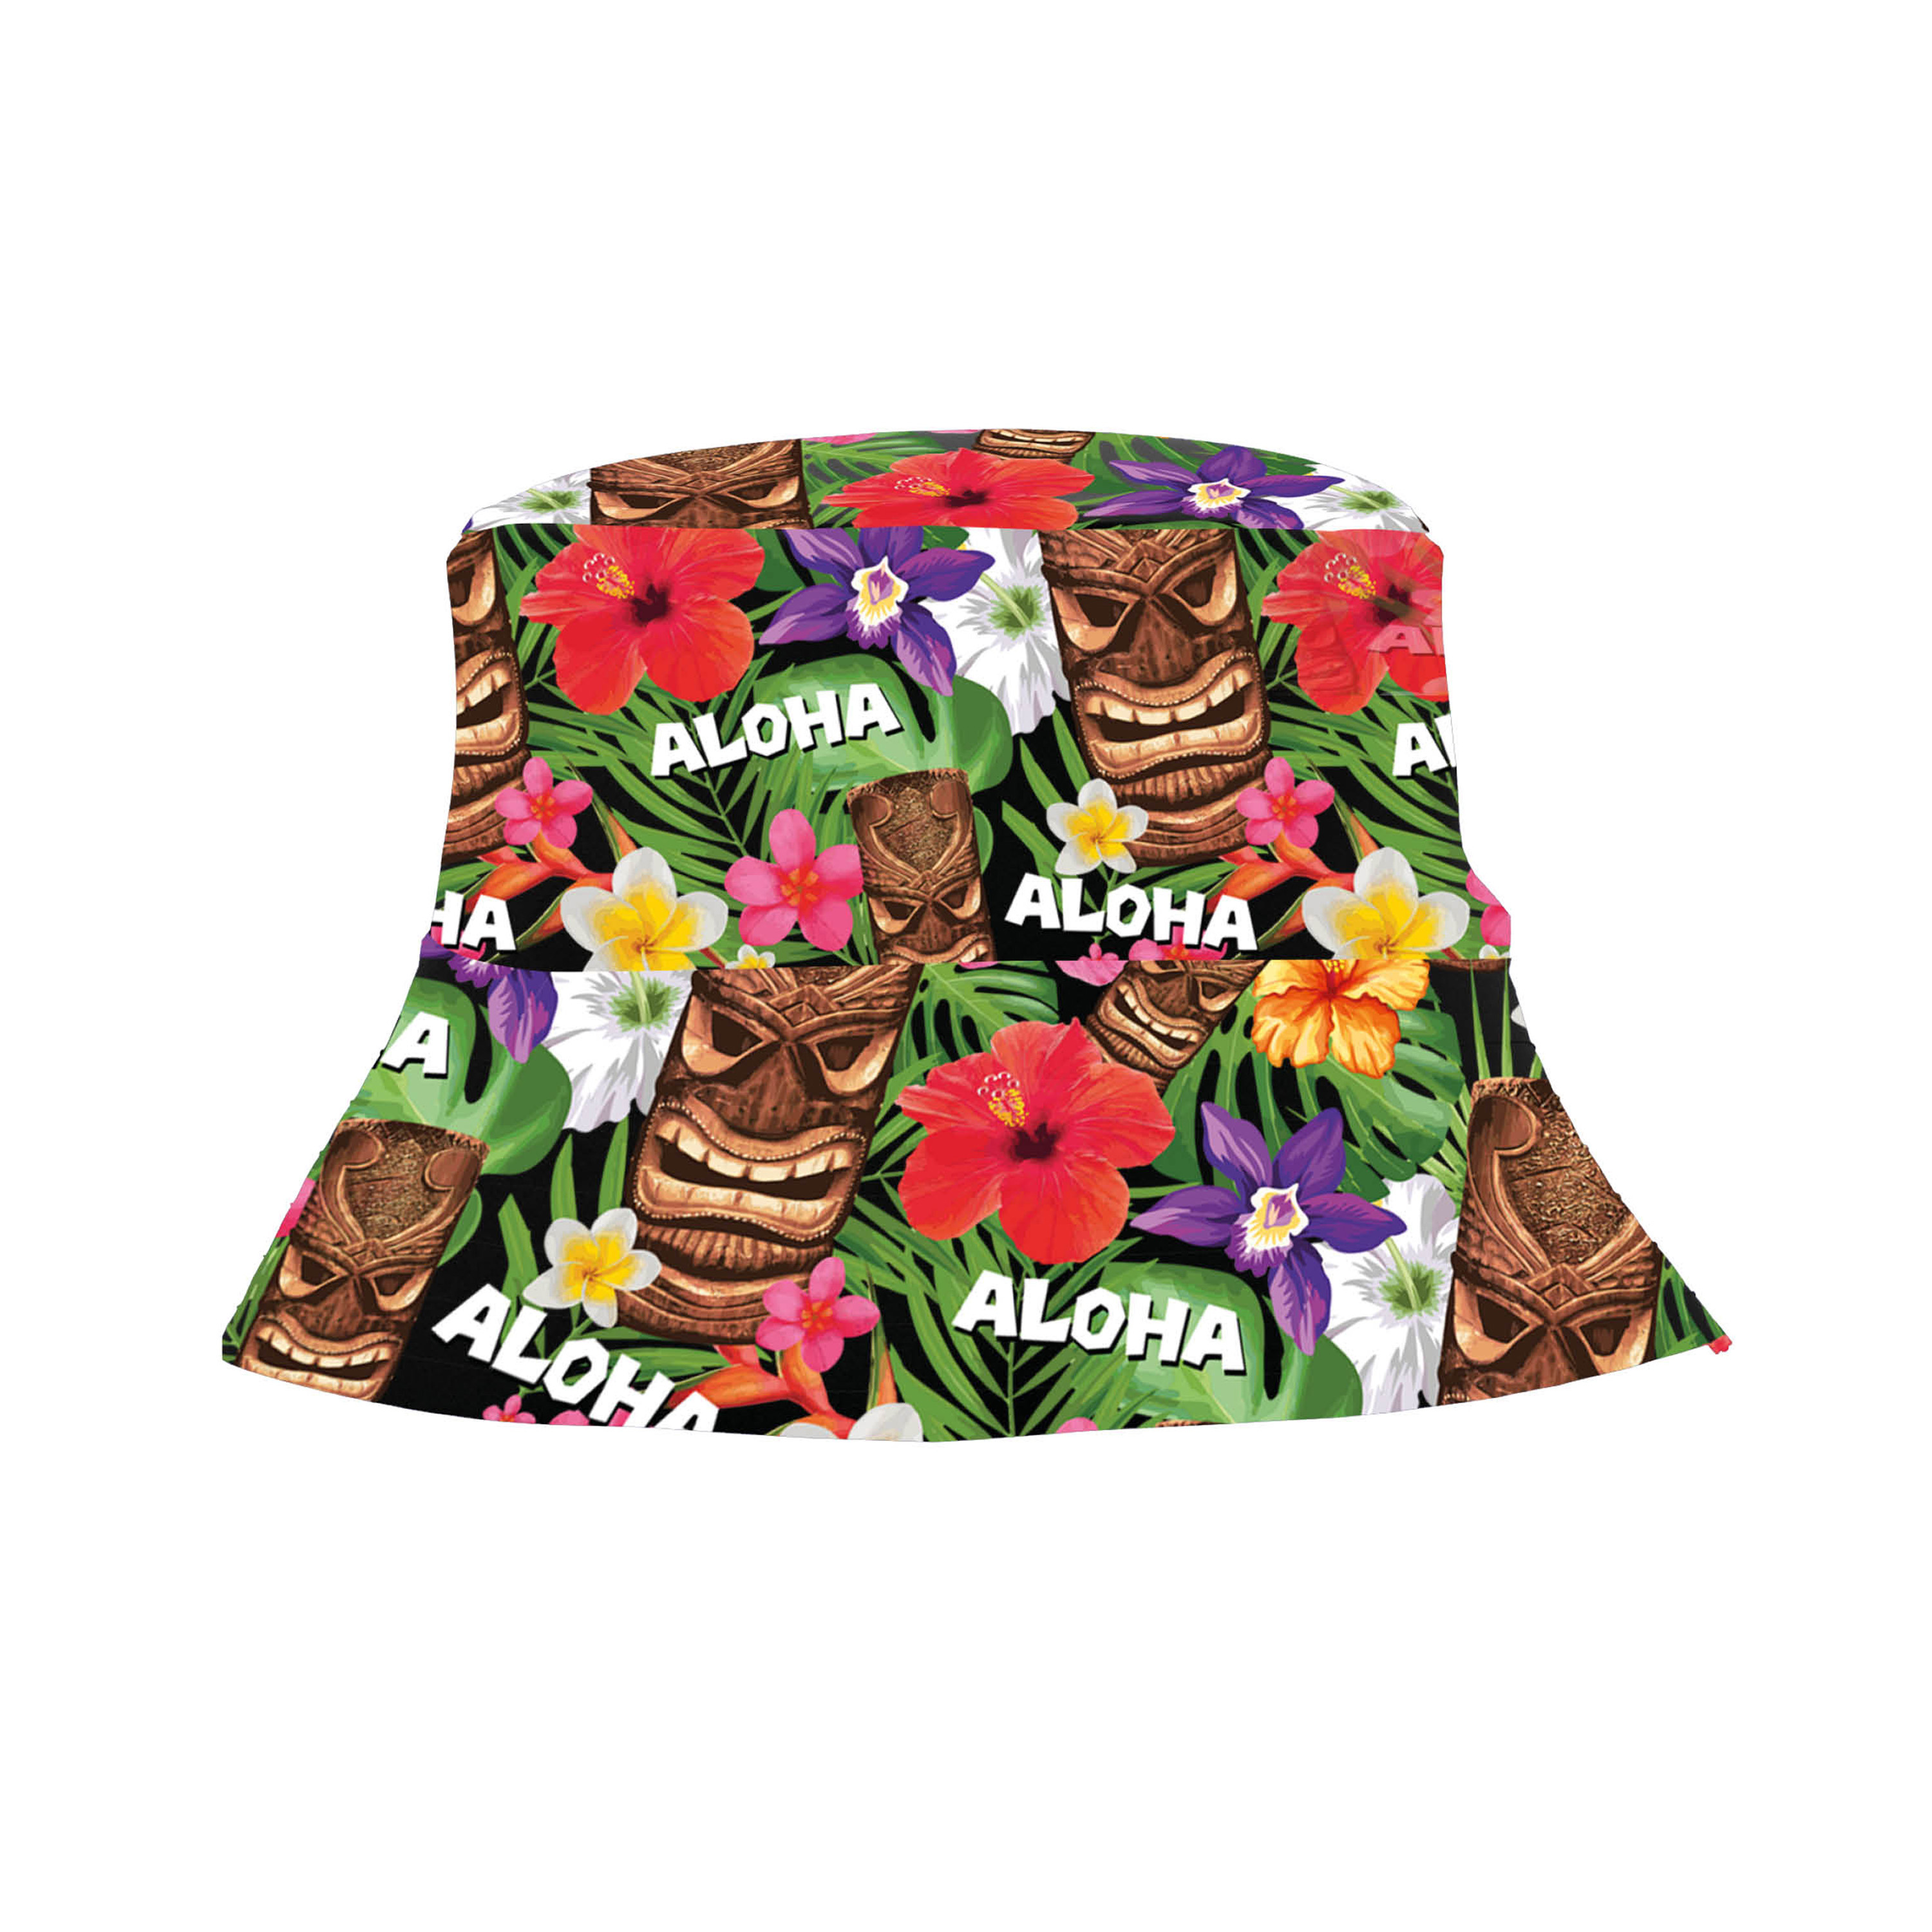 Verkleed hoedje voor Tropical Hawaii party Summer-jungle print volwassenen Carnaval-thema fees